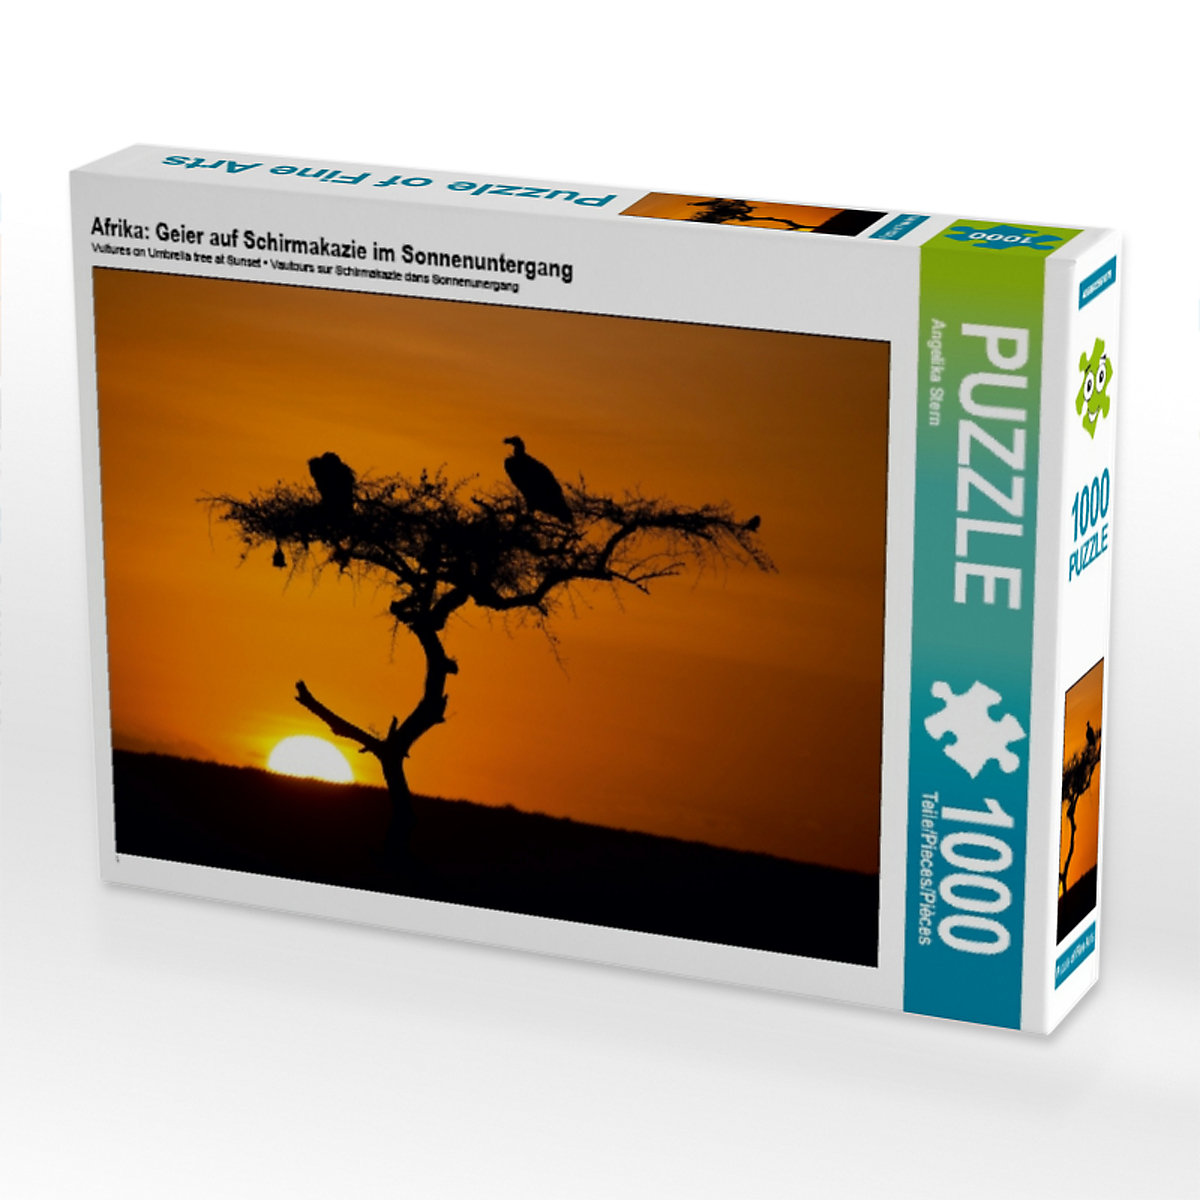 CALVENDO® Puzzle CALVENDO Puzzle Afrika: Geier auf Schirmakazie im Sonnenuntergang 1000 Teile Foto-Puzzle für glückliche Stunden